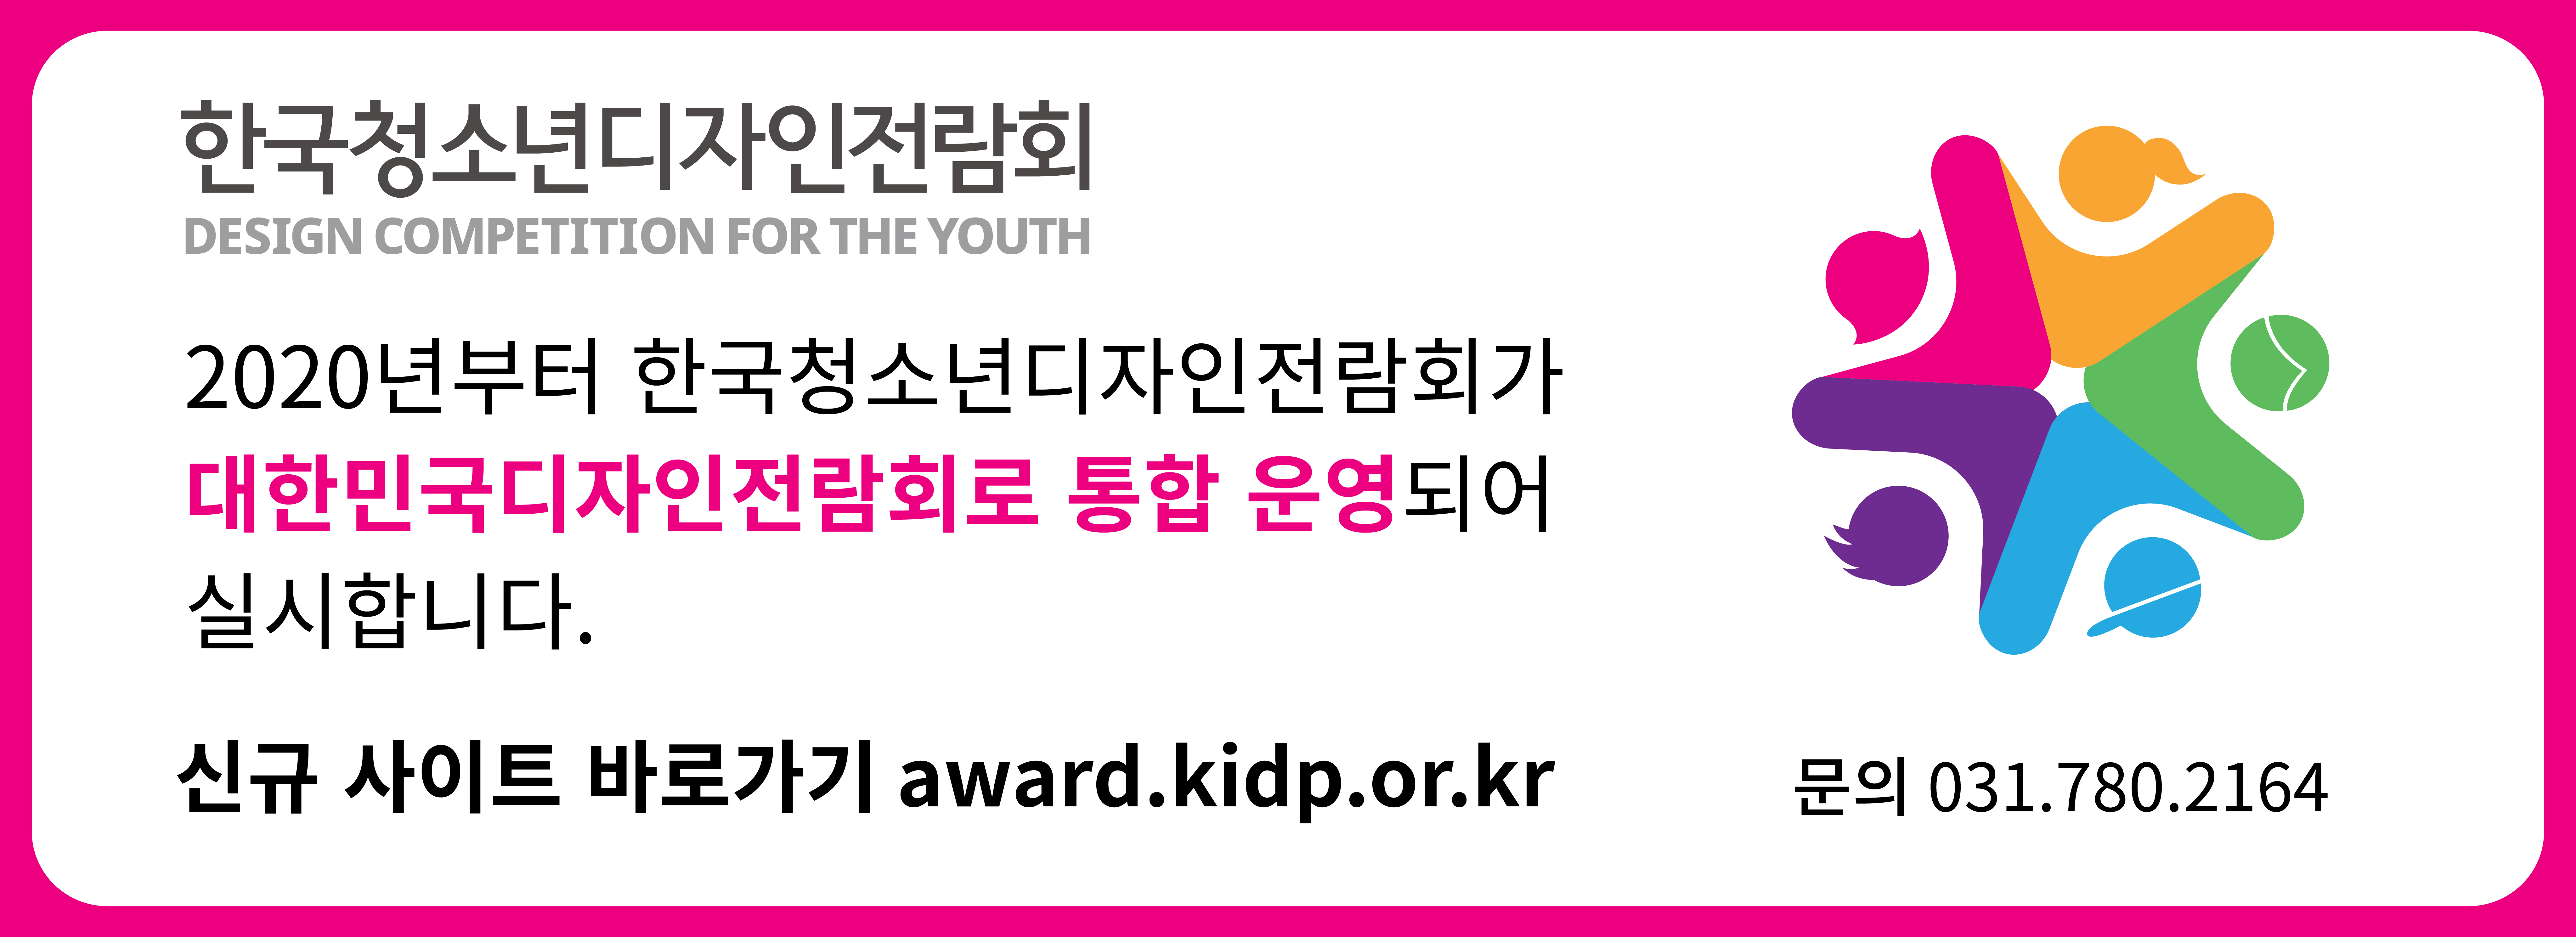 한국청소년디자인전람회 통합